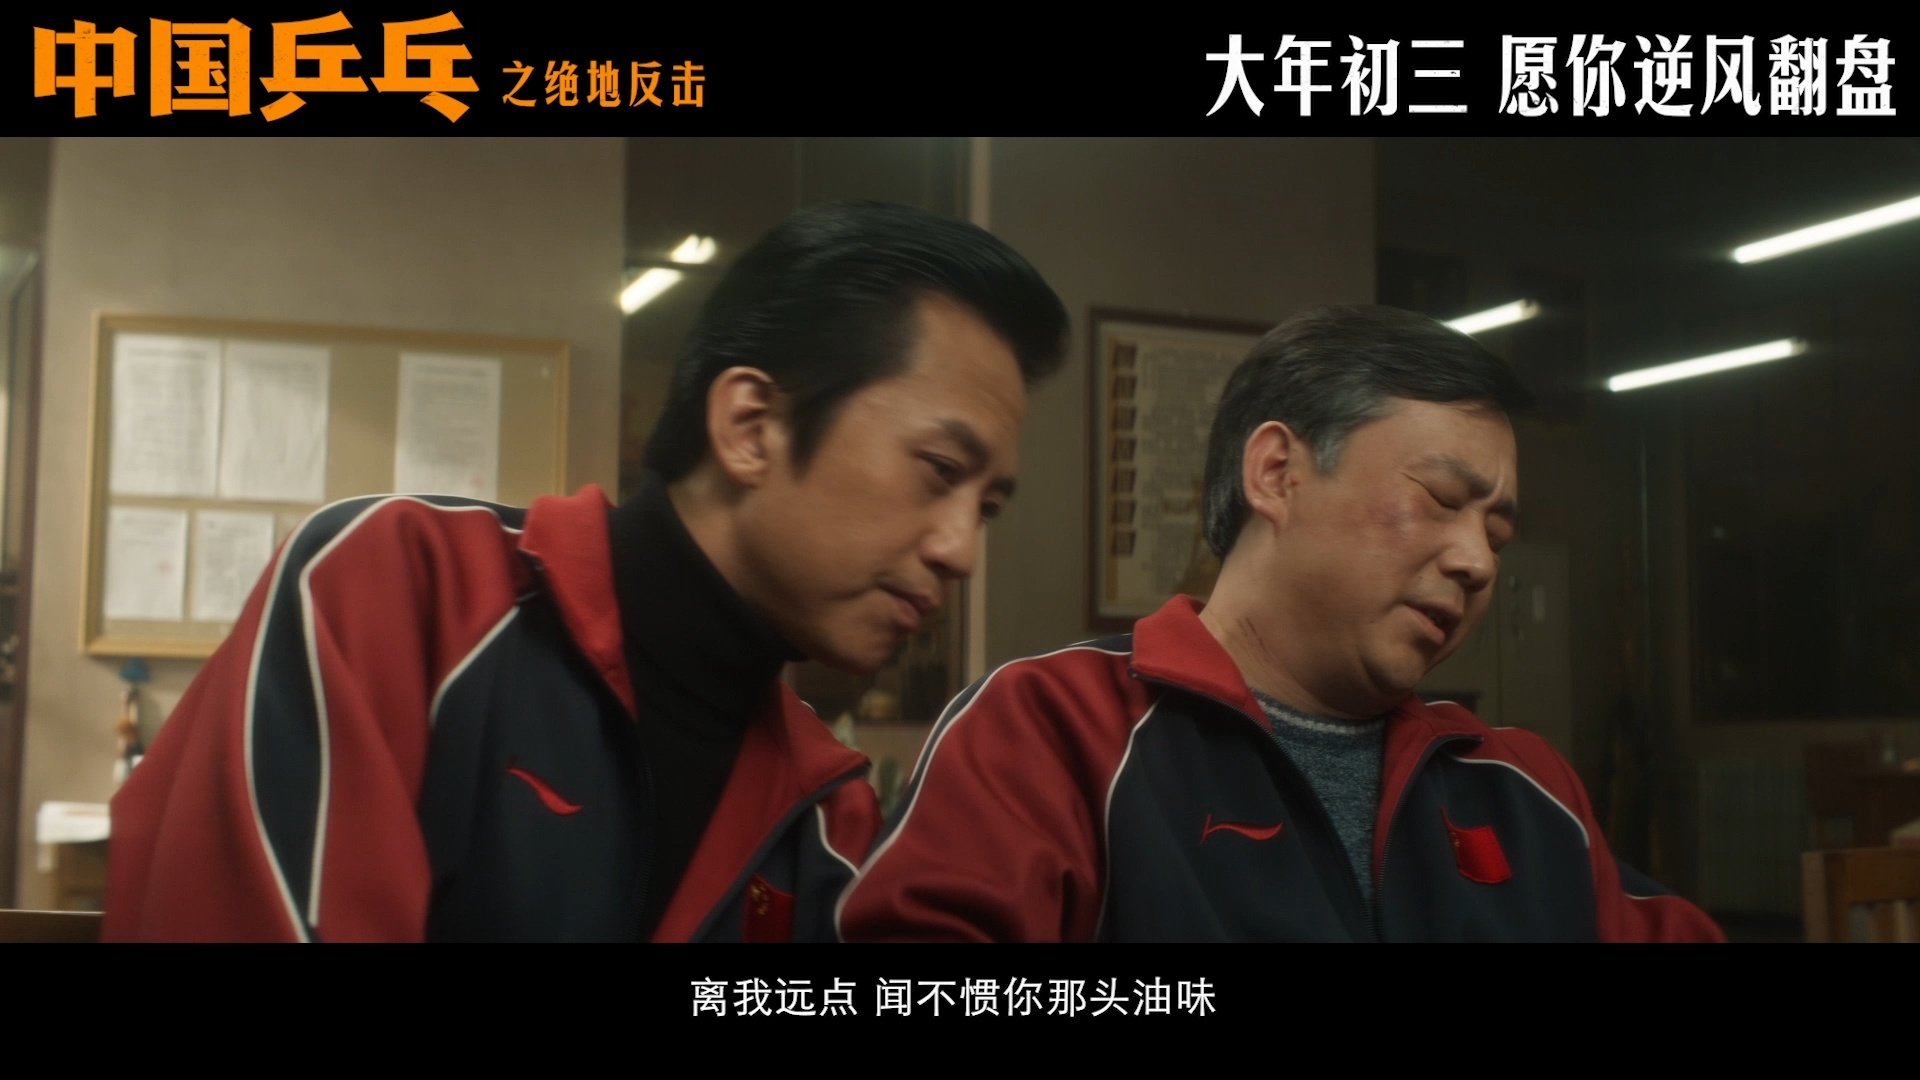 电影《中国乒乓之绝地反击》“谁是一家之主”版预告，揭露了赛场拼搏背后的辛酸苦辣